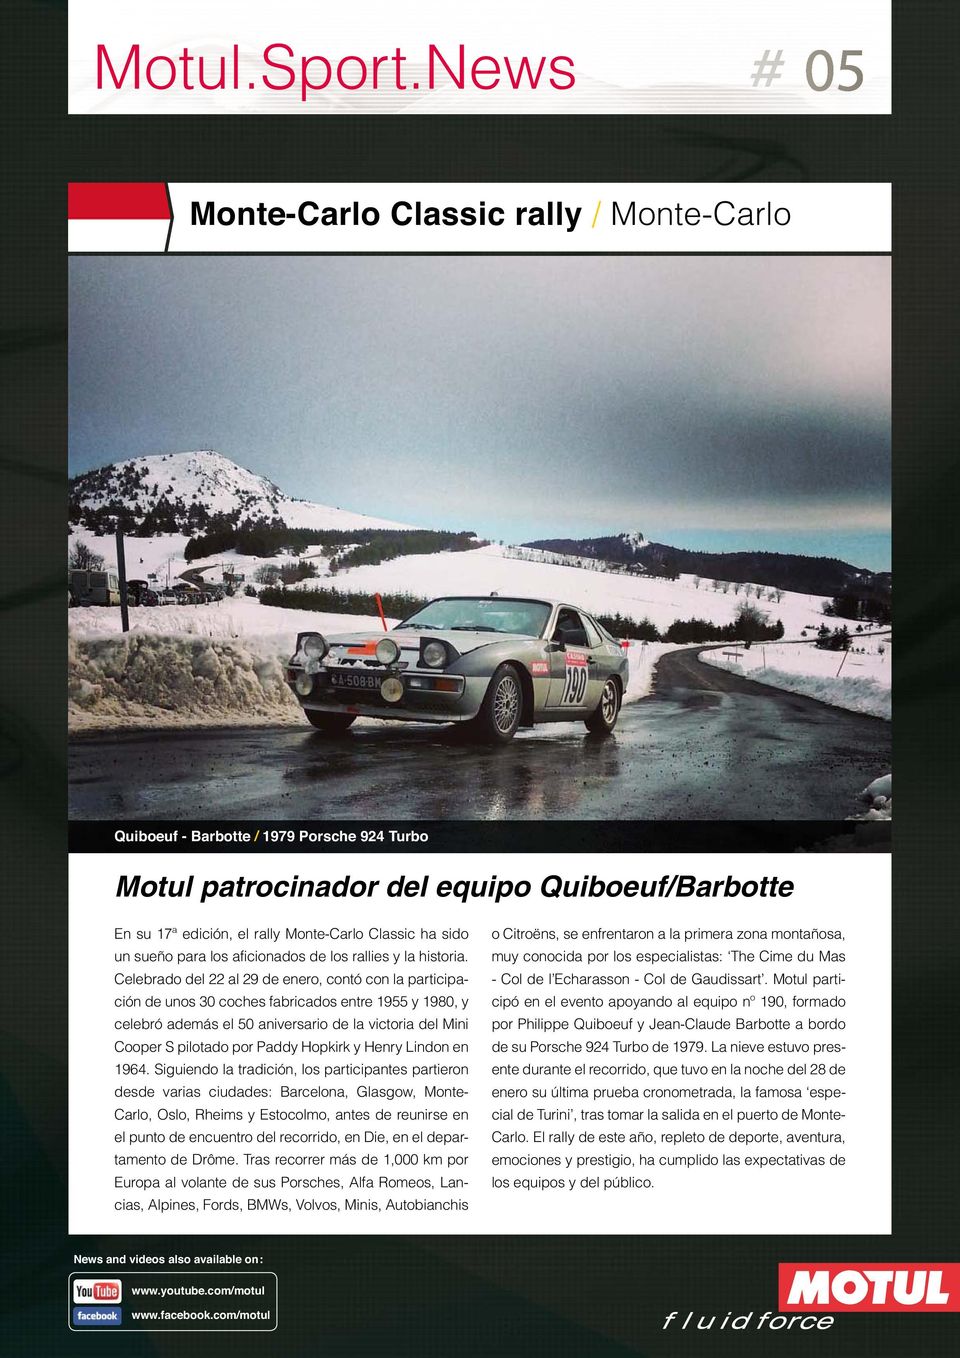 Celebrado del 22 al 29 de enero, contó con la participación de unos 30 coches fabricados entre 1955 y 1980, y celebró además el 50 aniversario de la victoria del Mini Cooper S pilotado por Paddy